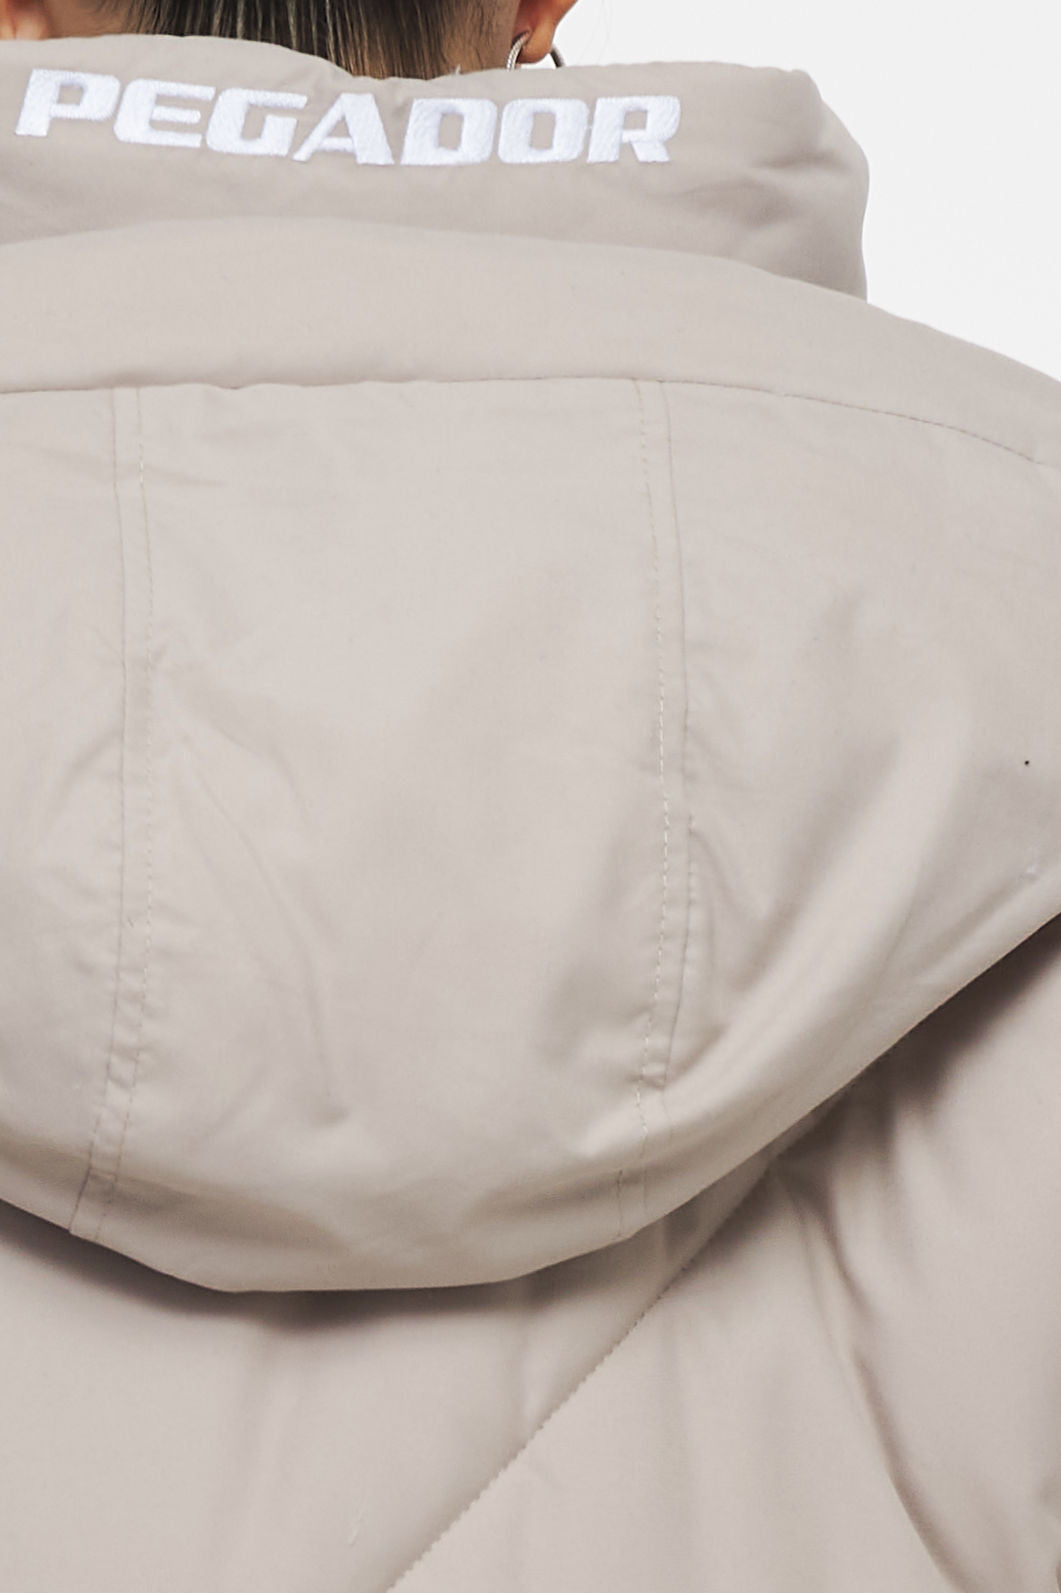 Sierra Oversized Hooded Puffer Jacket Beige Jackets | Women Ahead of Time Female 